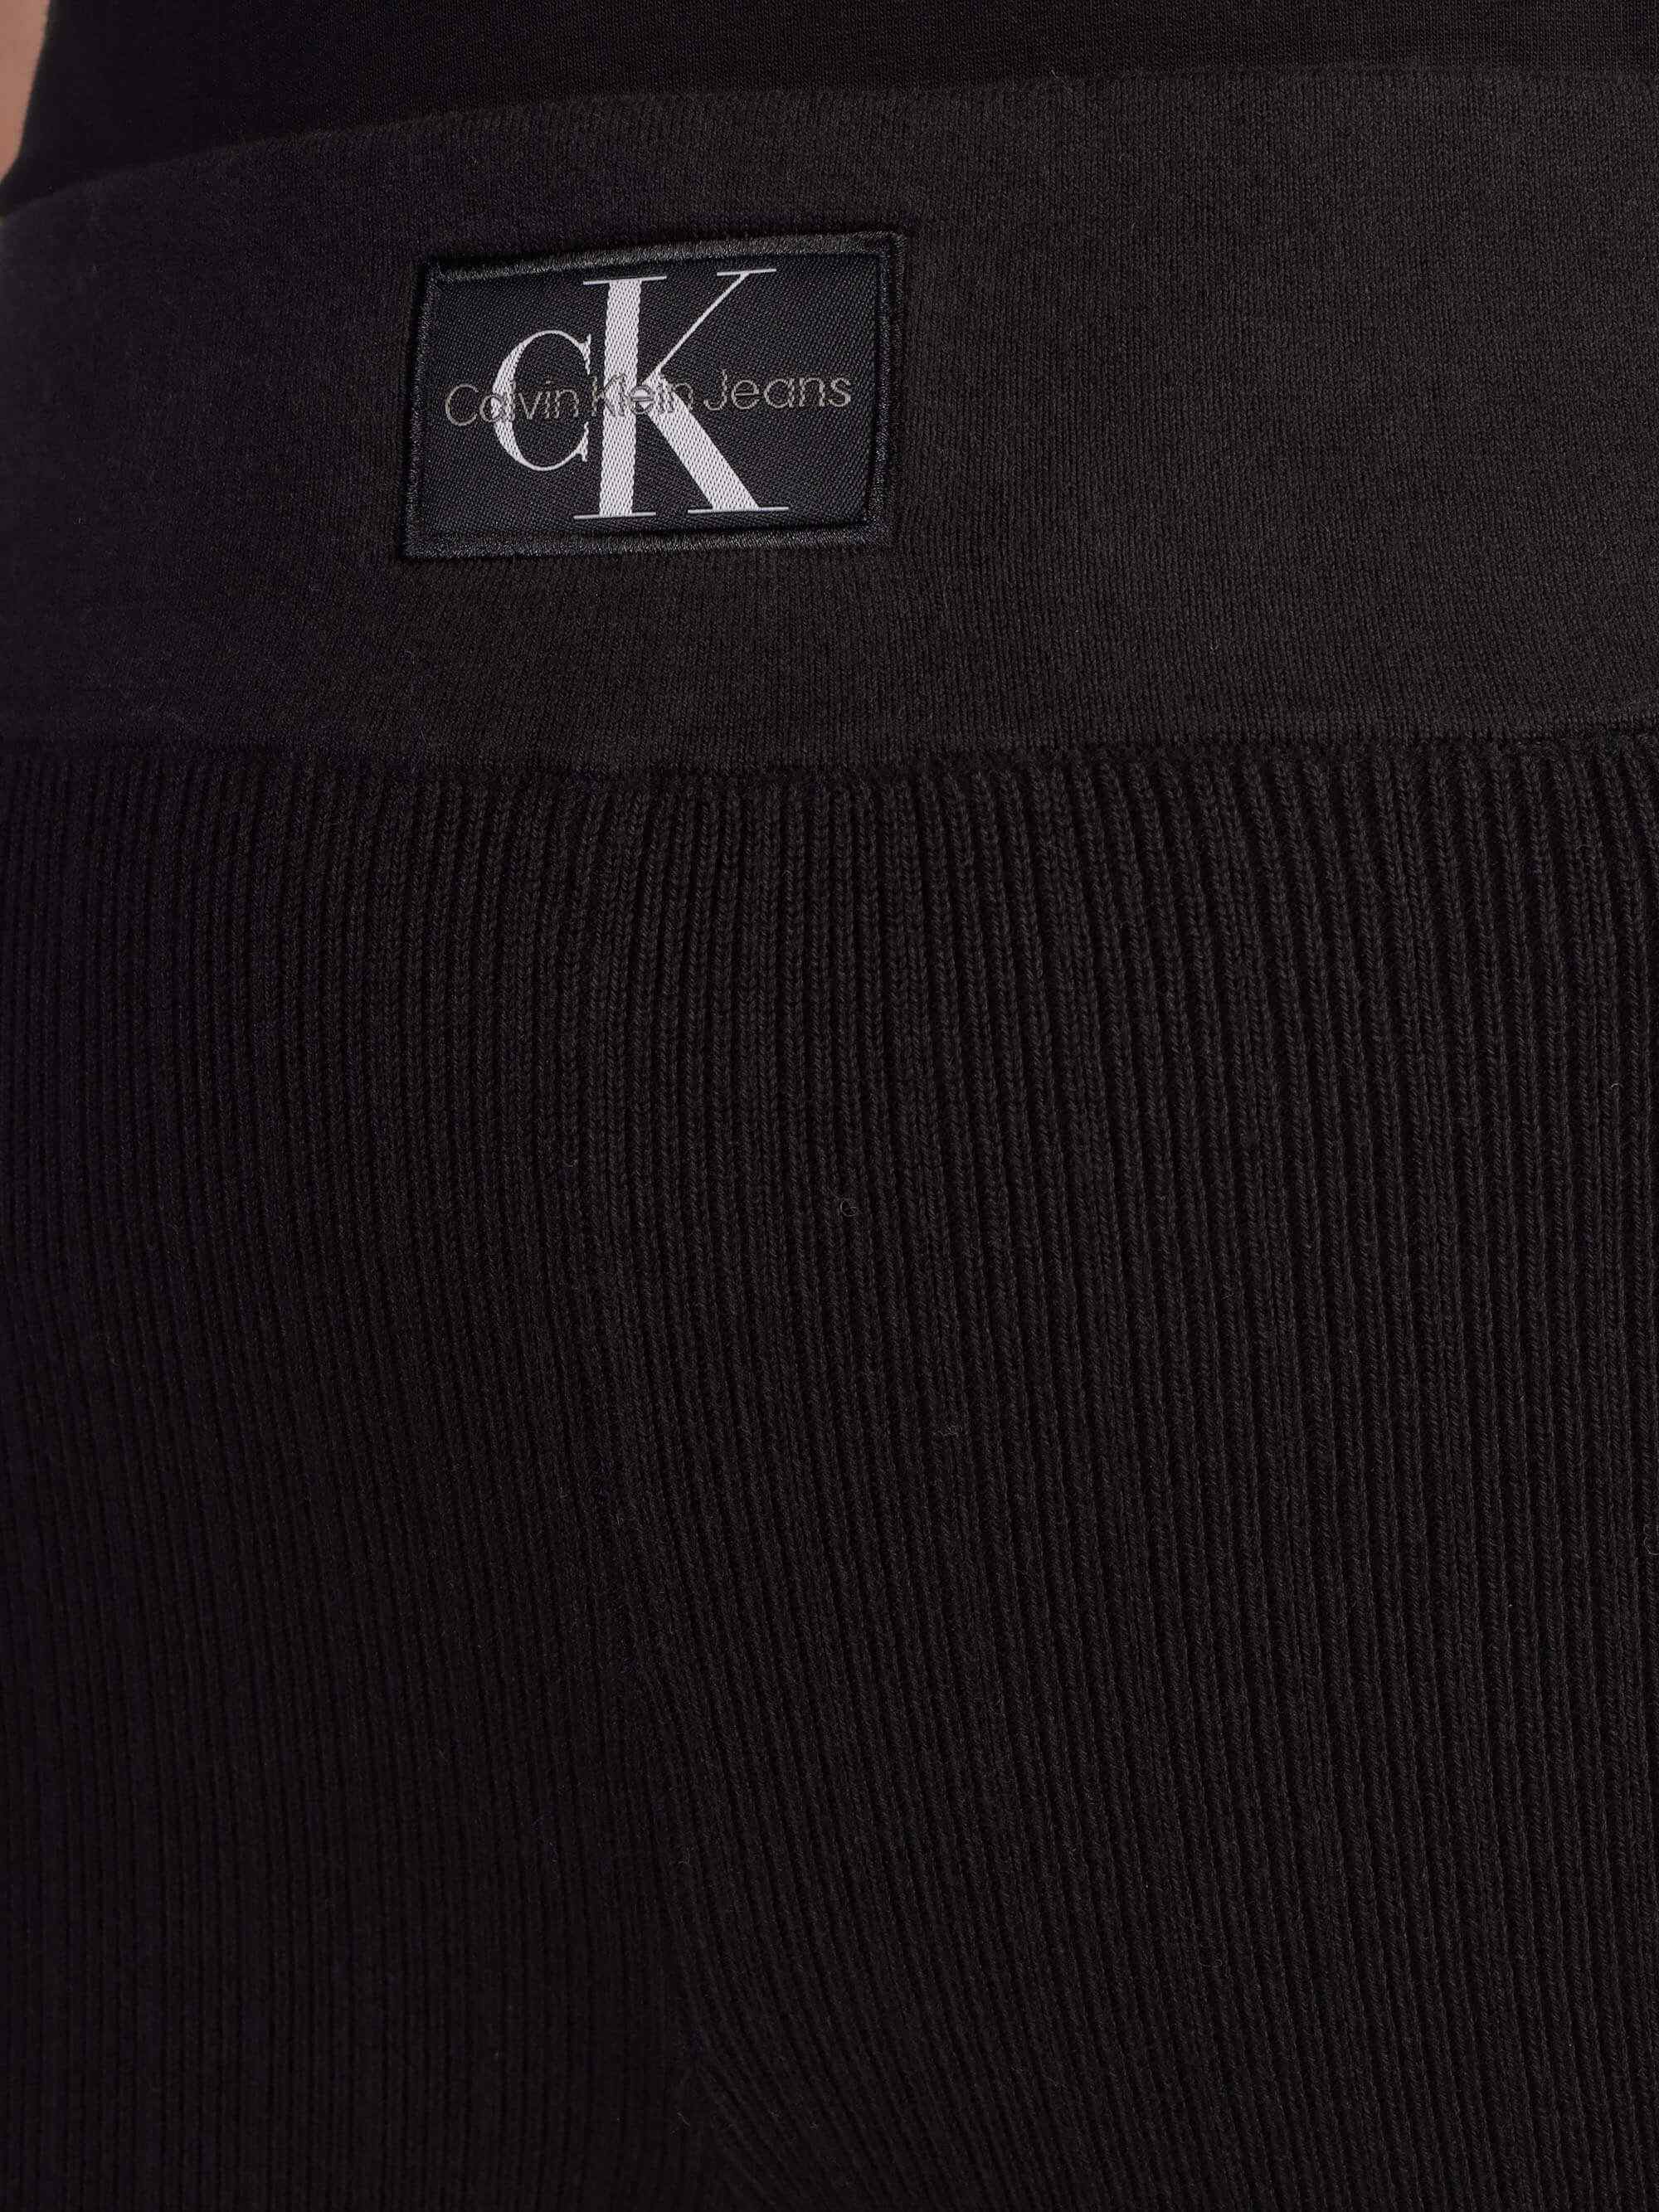 Pantalón Calvin Klein Canalé Mujer Negro